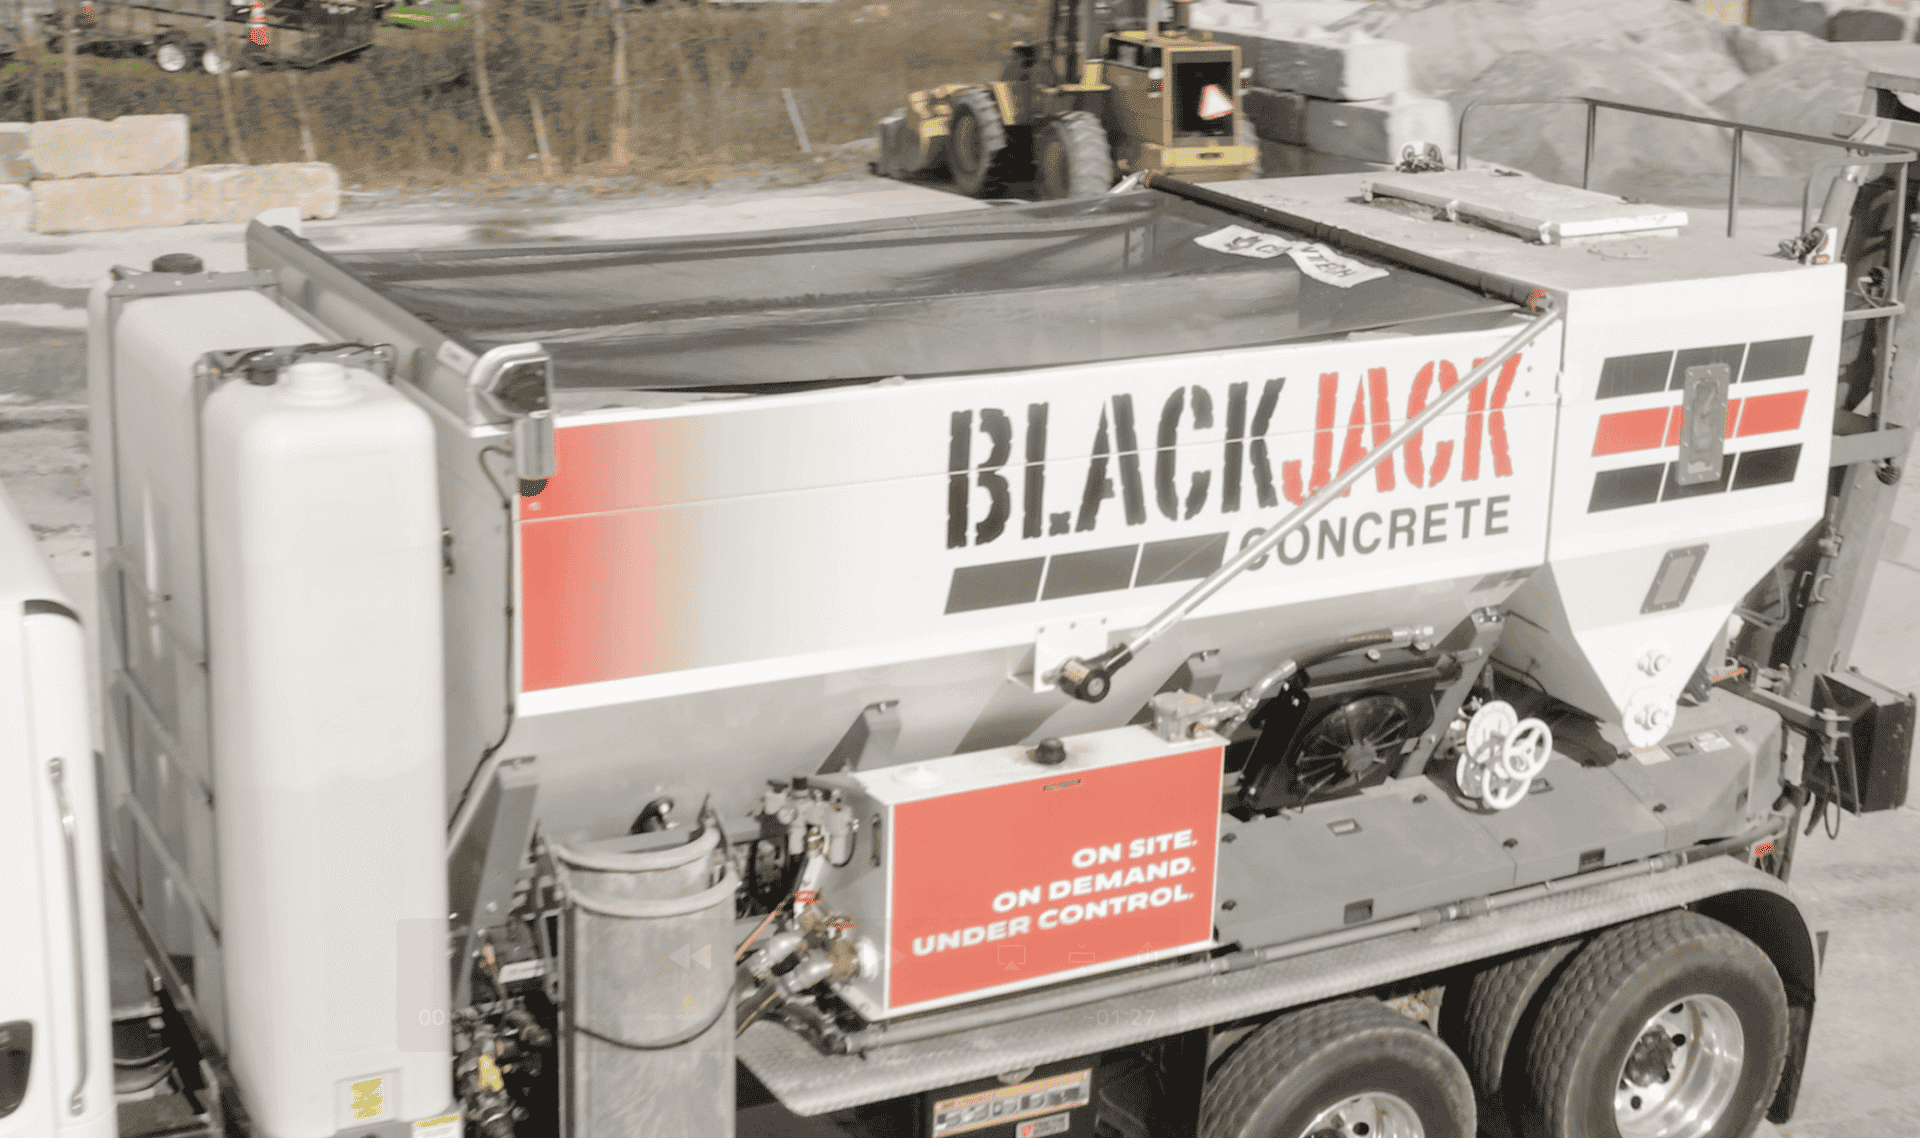 Blackjack Concrete